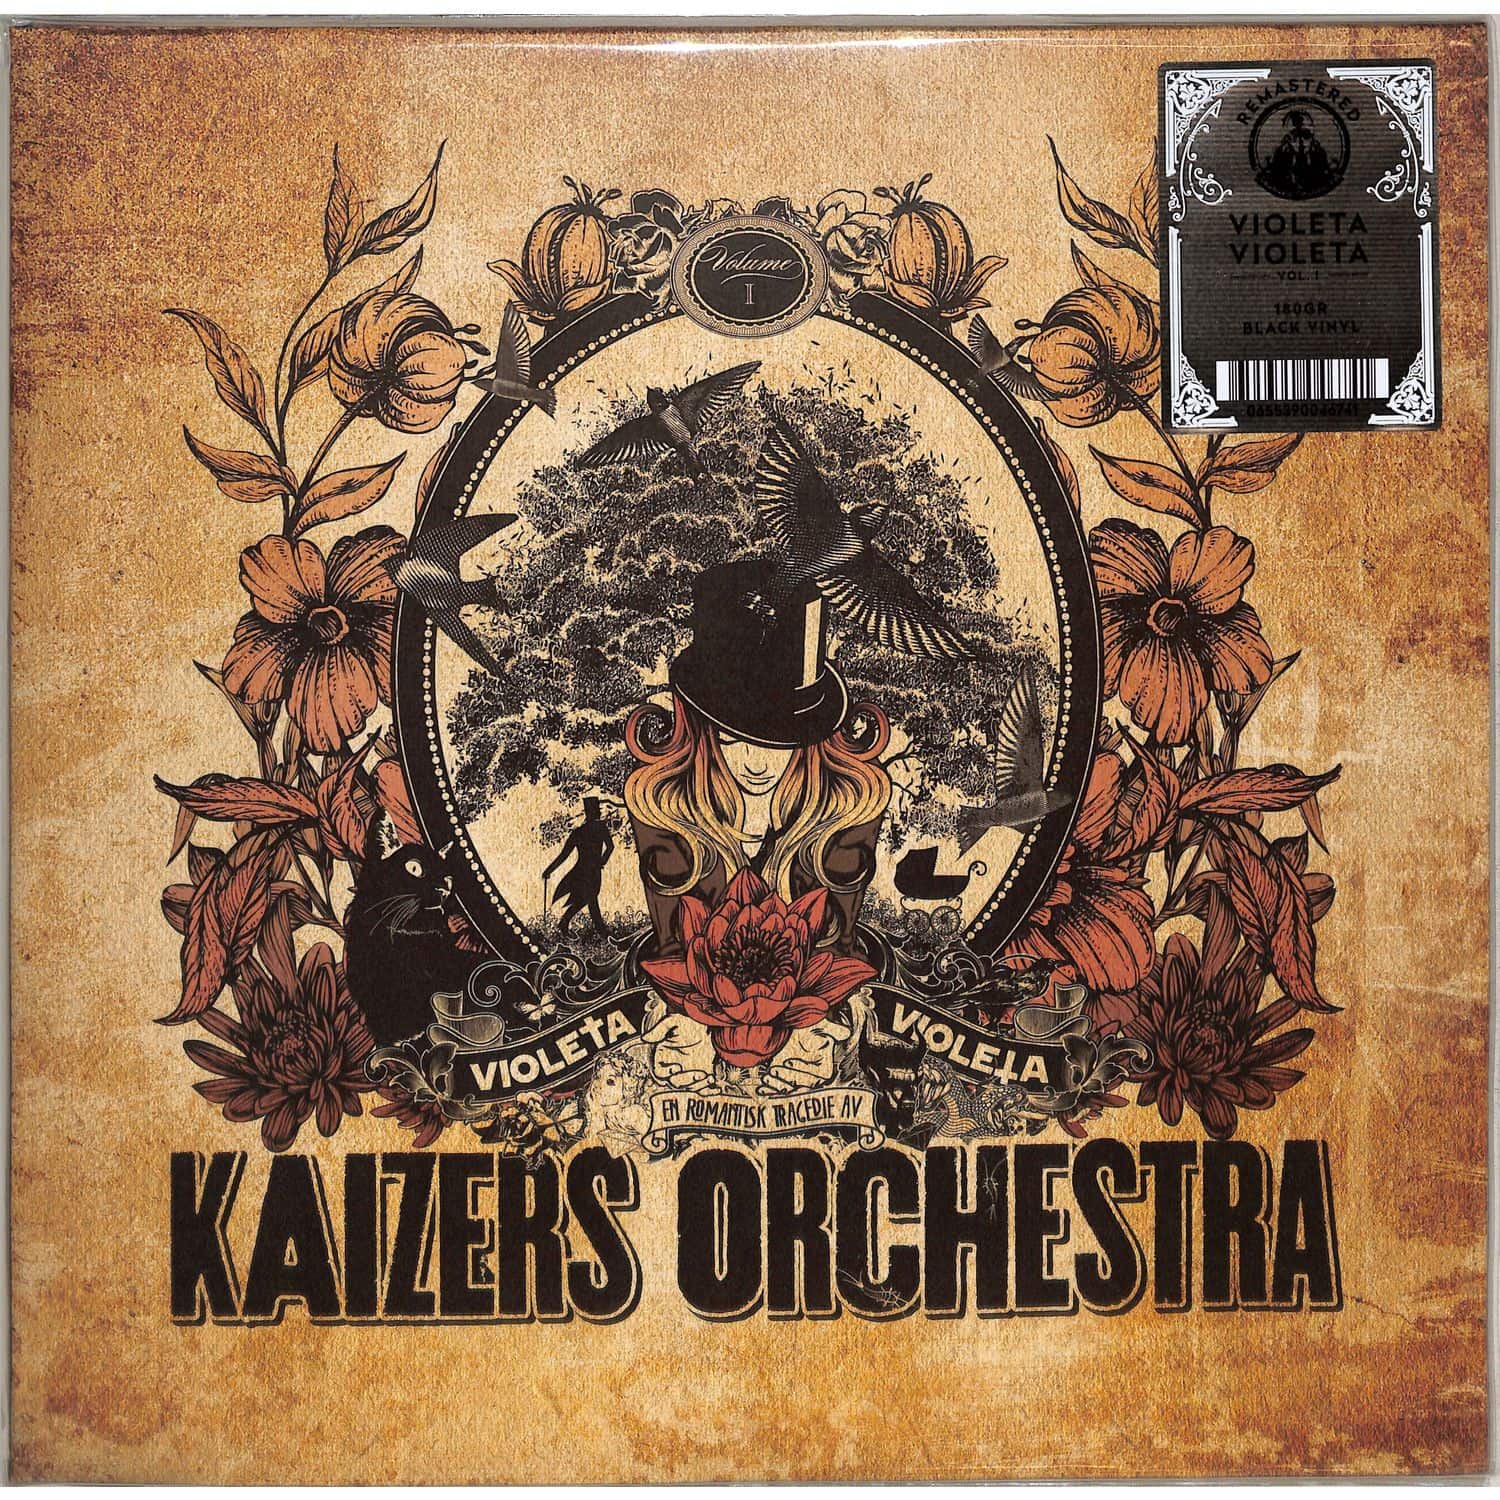 Kaizers Orchestra - VIOLETA VIOLETA I 